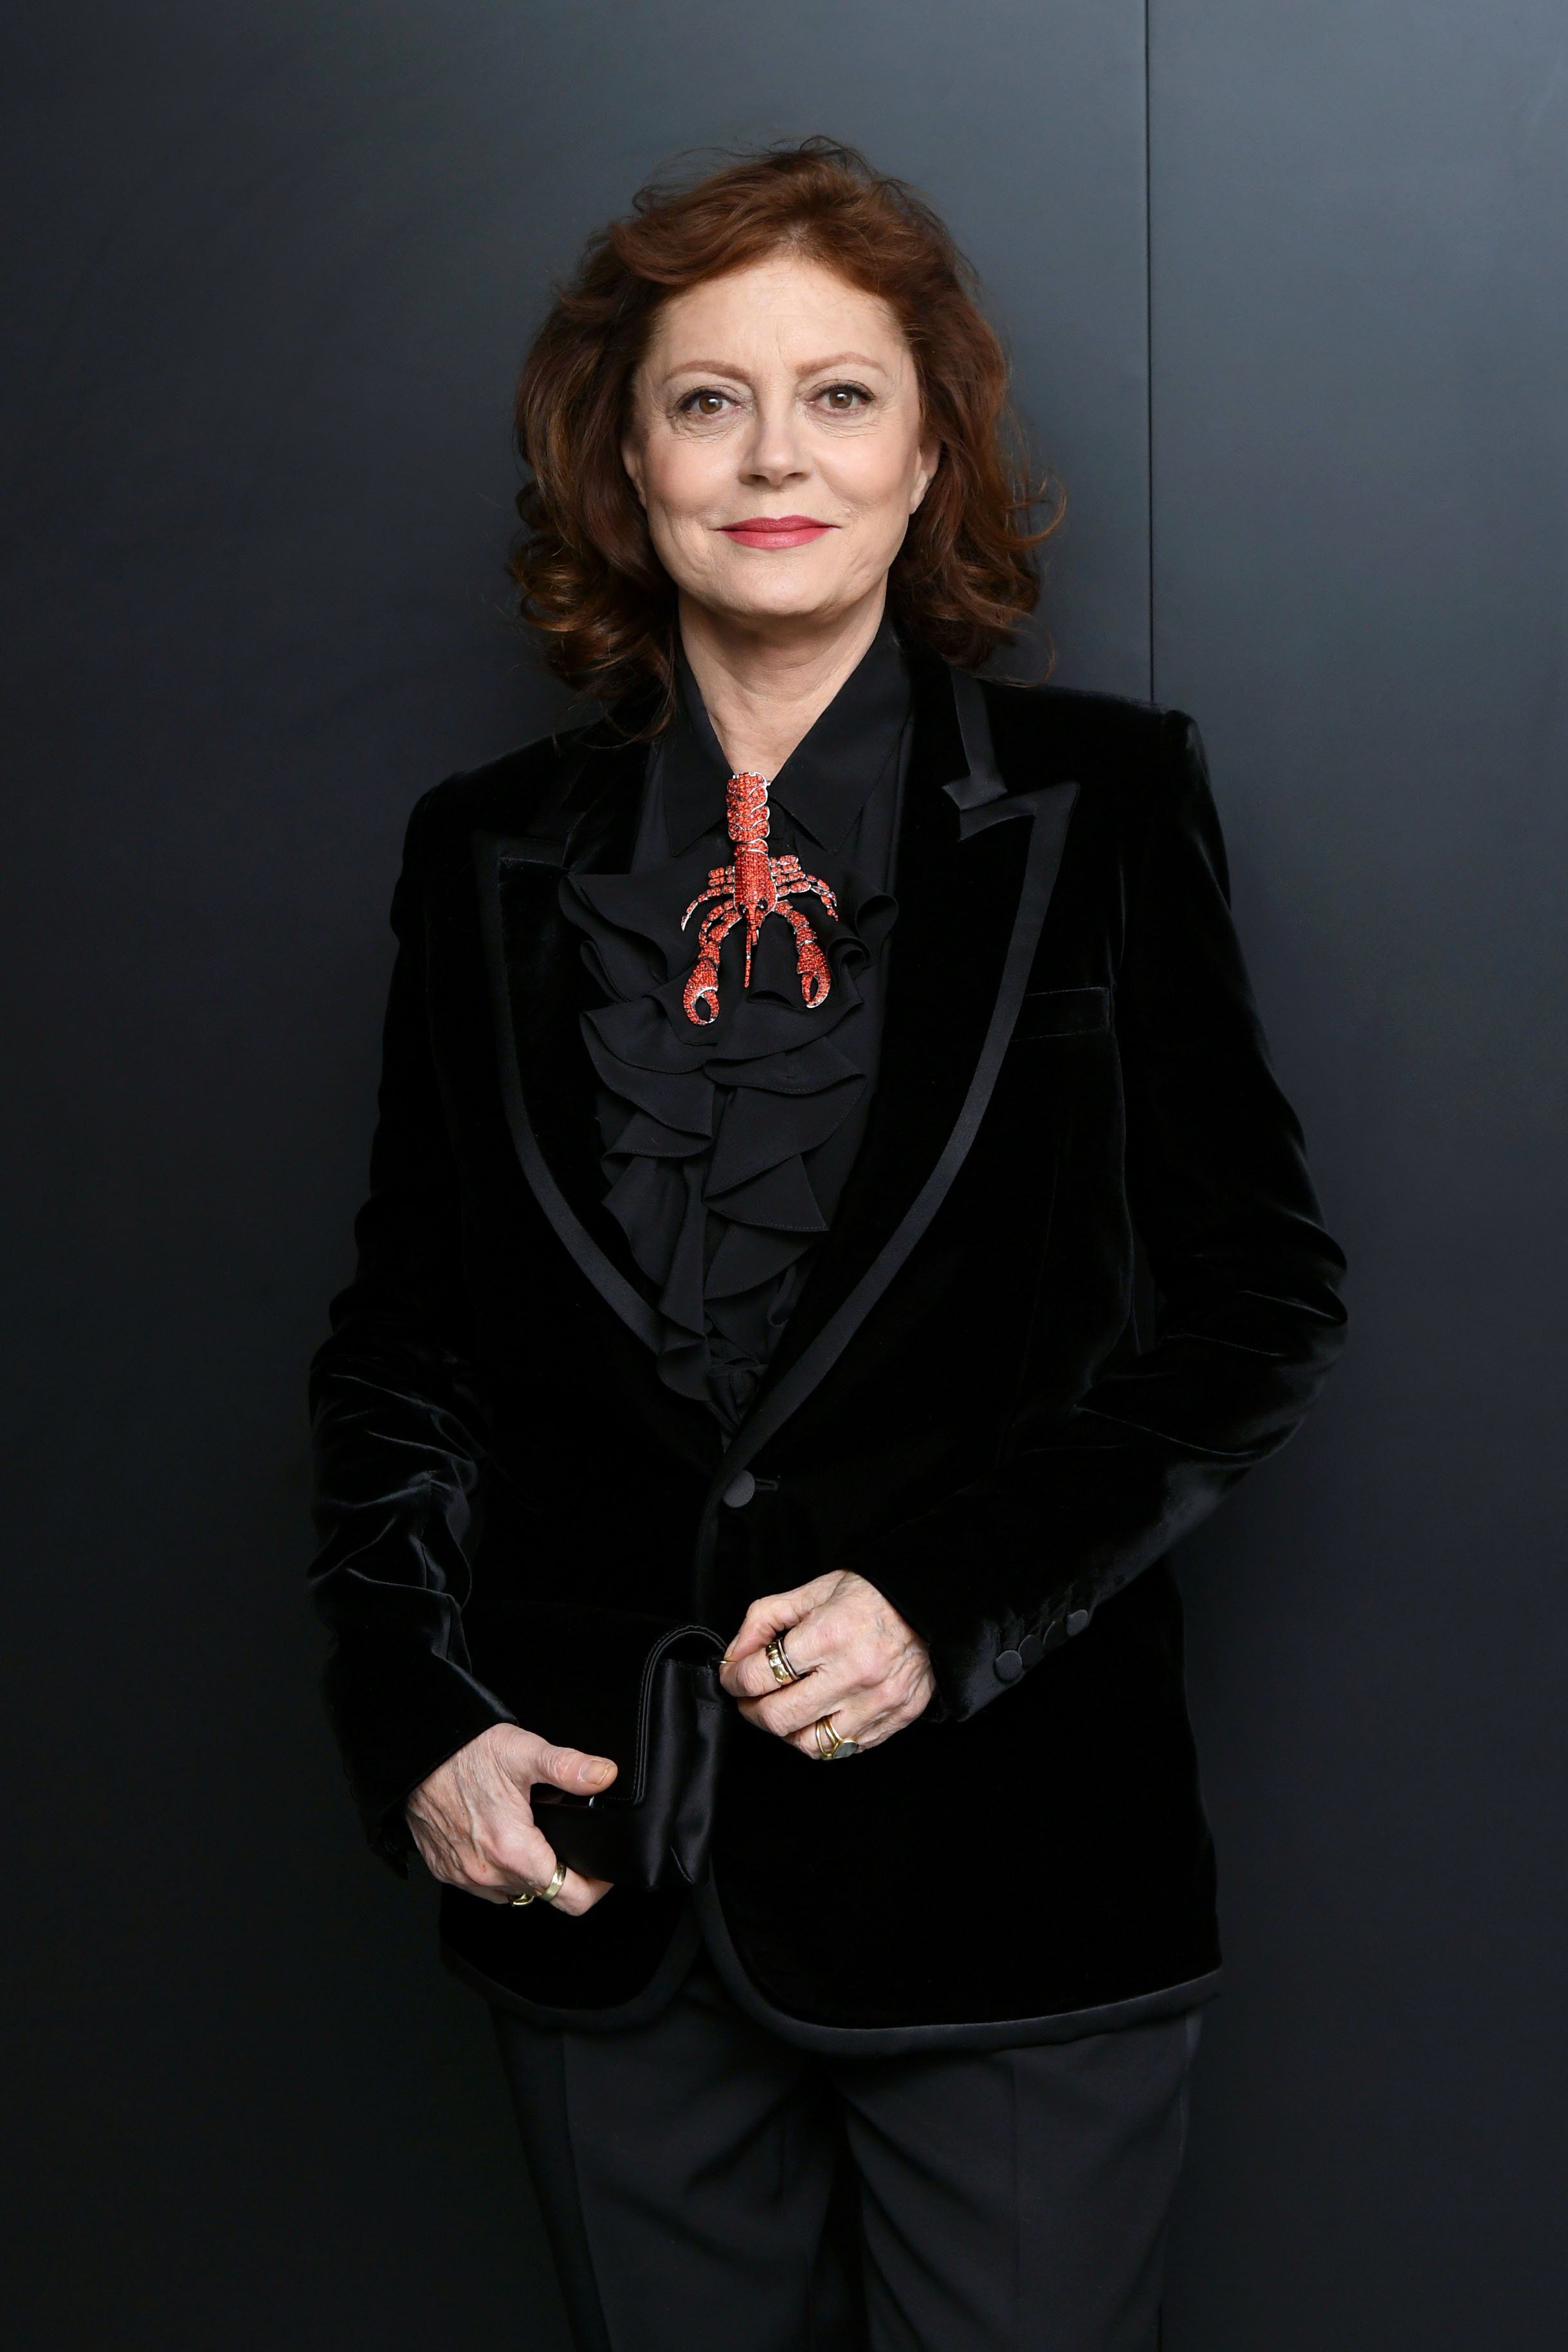 La actriz Susan Sarandon asiste a la proyección del 50 aniversario de Saint Laurent "Belle De Jour" en el Museo de Arte Moderno el 19 de diciembre de 2018 en la ciudad de Nueva York. | Foto: Getty Images